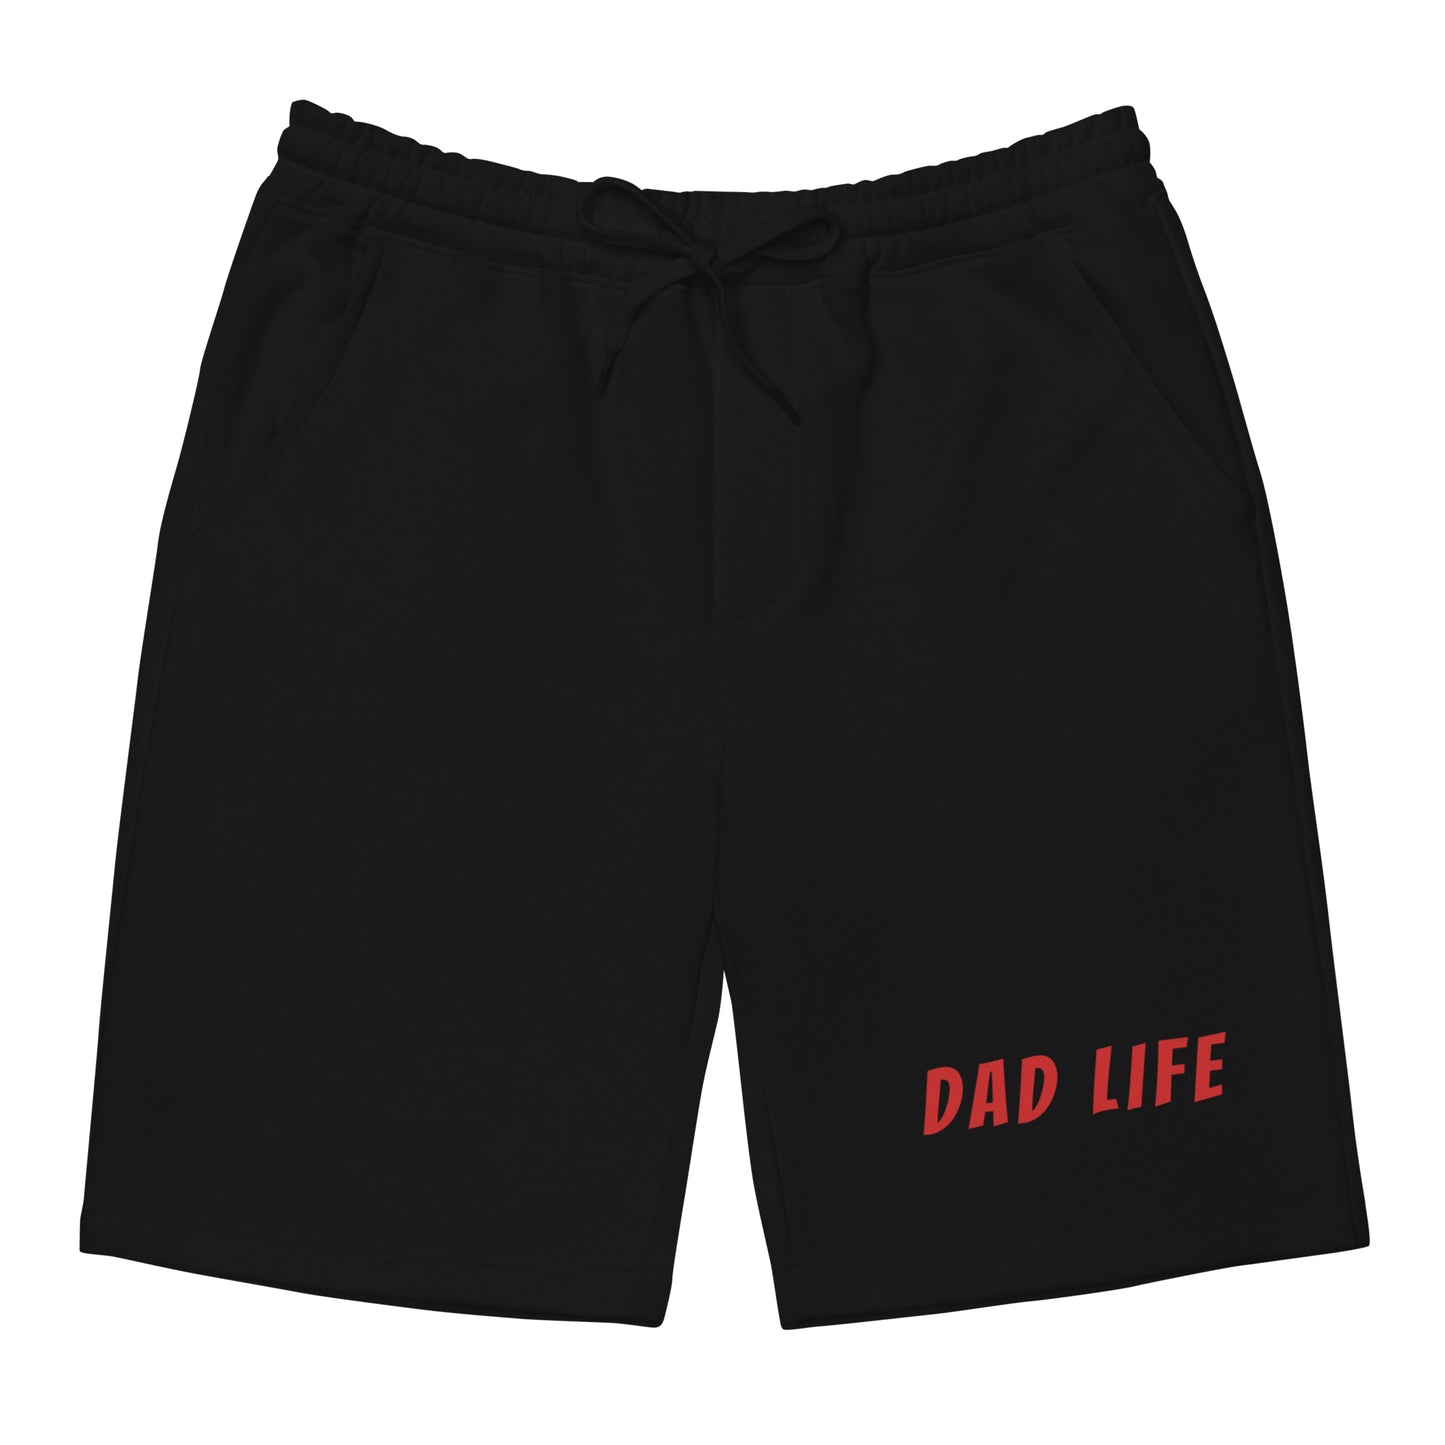 Dad Life fleece shorts